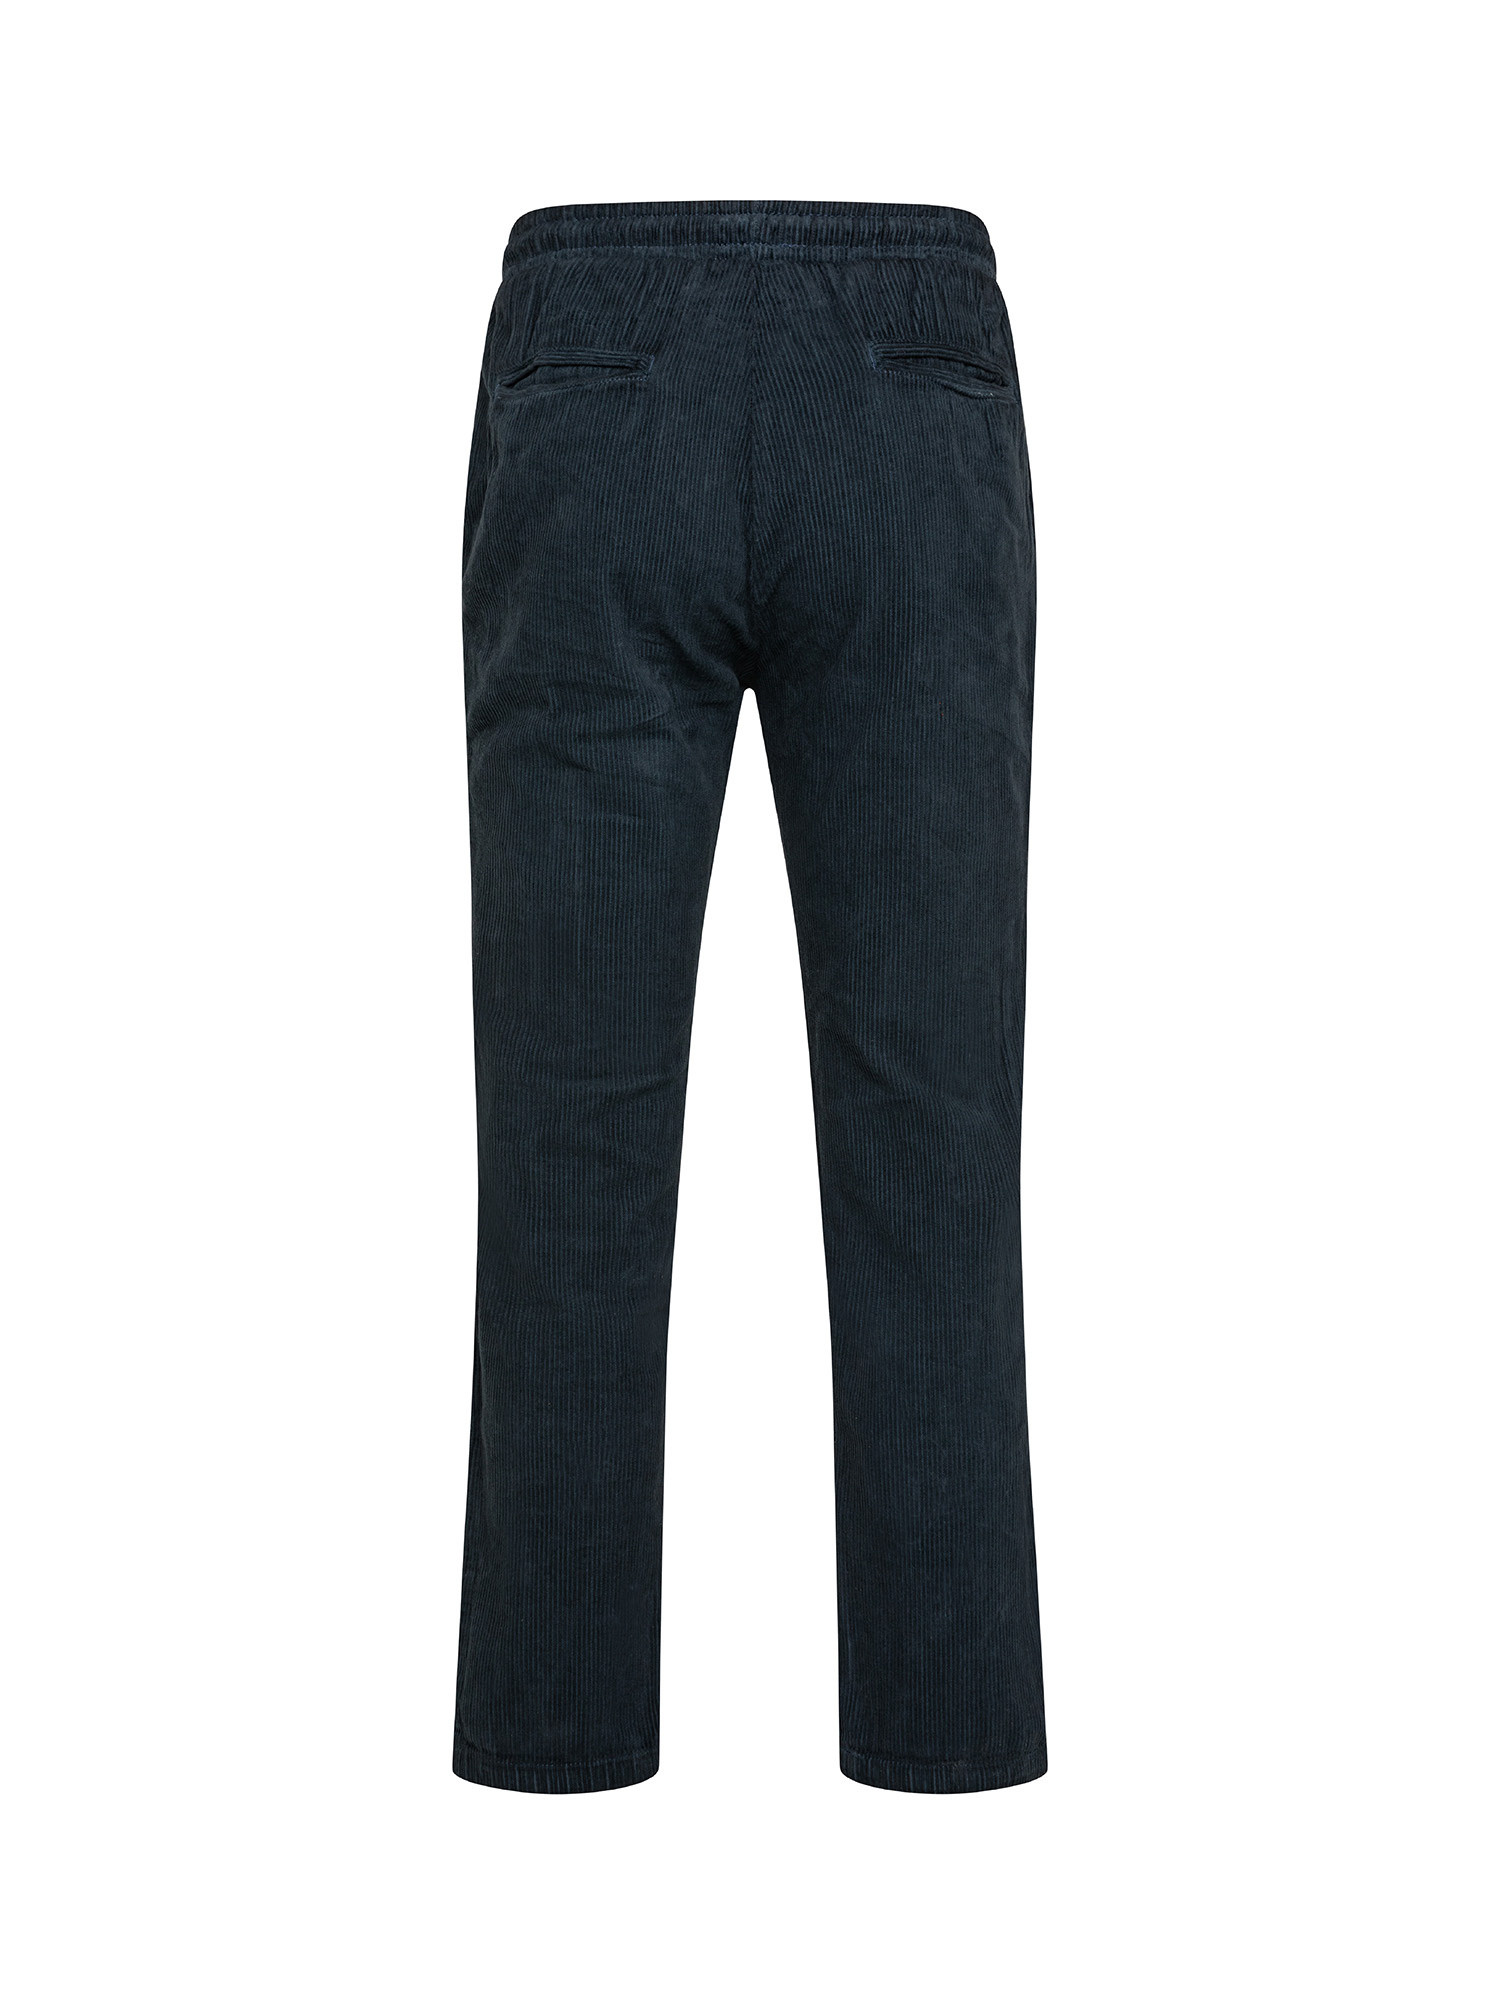 JCT - Velvet trousers, Dark Blue, large image number 1